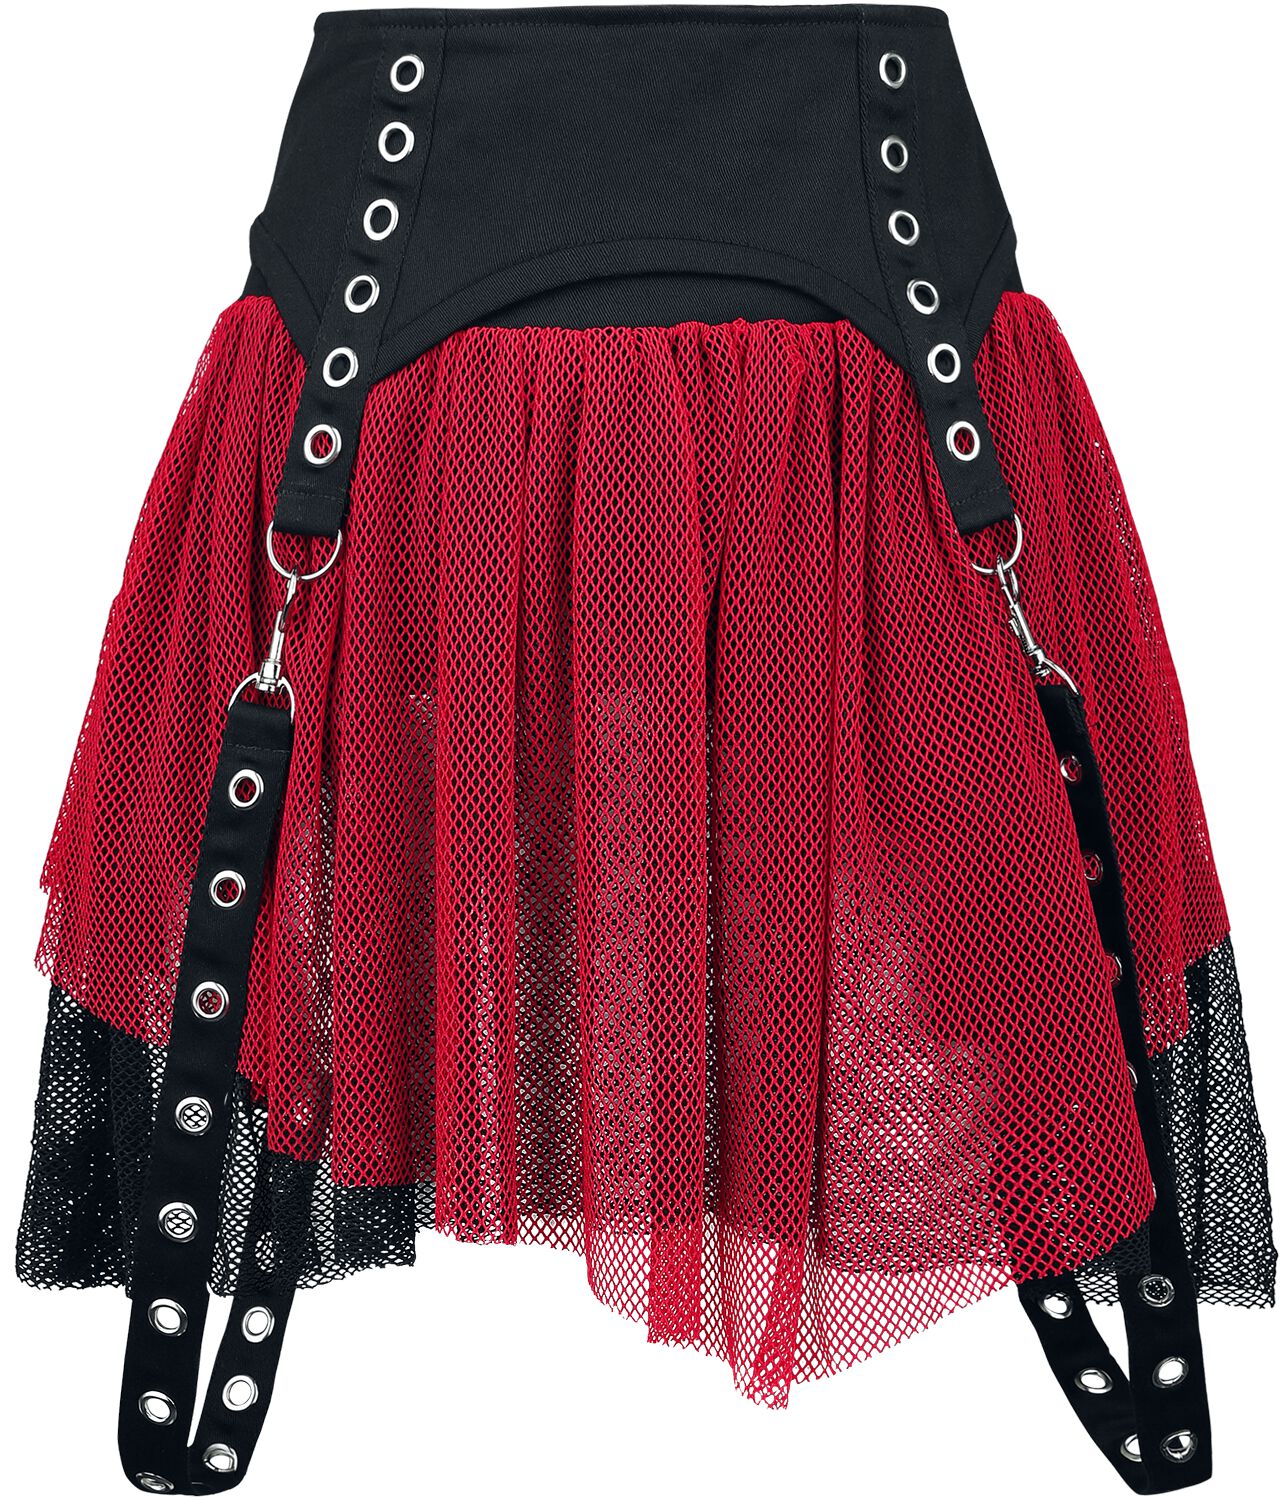 Poizen Industries - Gothic Kurzer Rock - Cybele Skirt - XS bis XXL - für Damen - Größe M - schwarz/rot